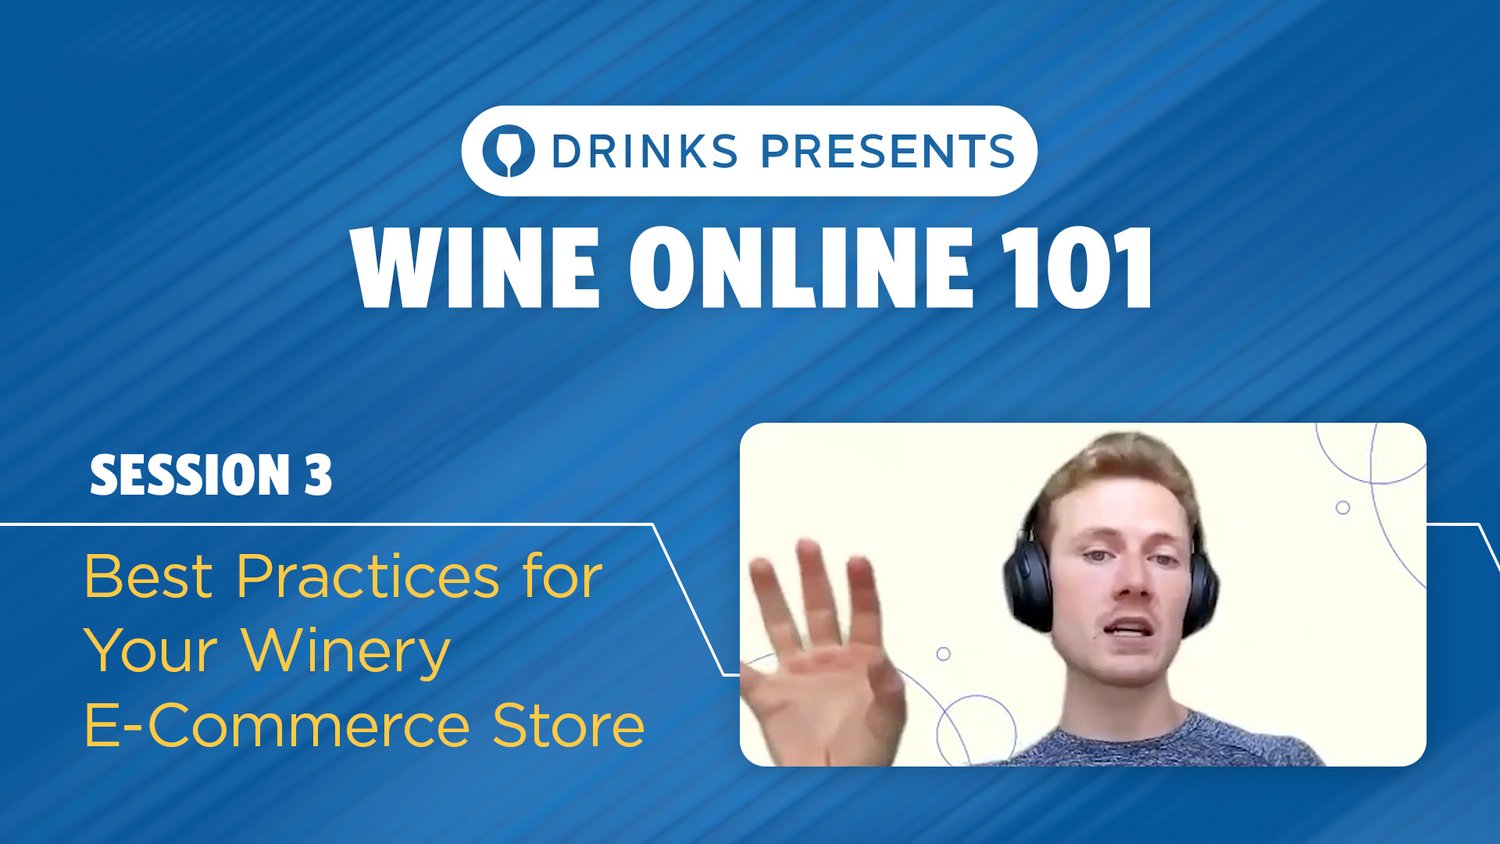 drinks-wine-online-101-title-slide-session-03